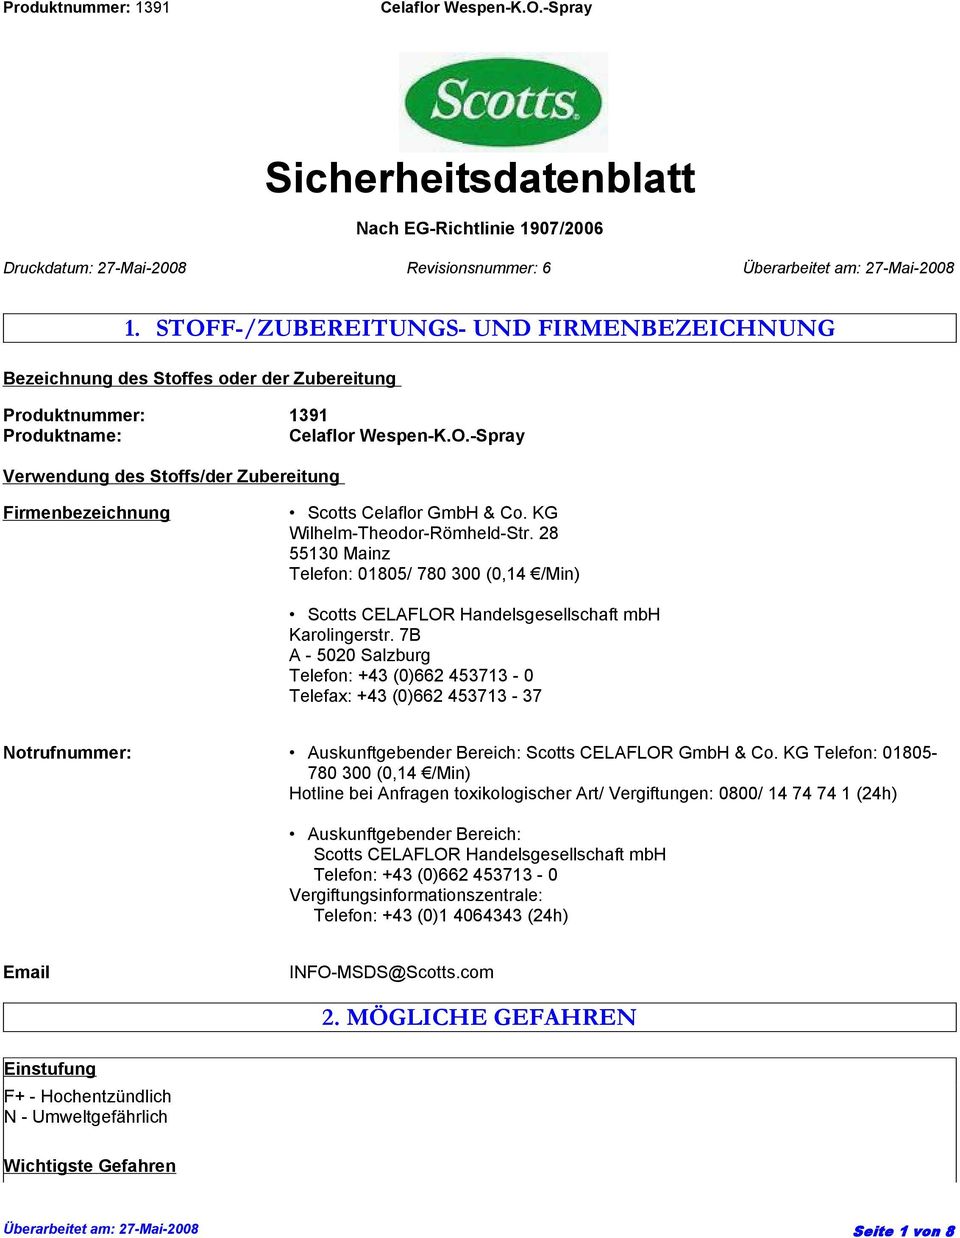 Co. KG Wilhelm-Theodor-Römheld-Str. 28 55130 Mainz Telefon: 01805/ 780 300 (0,14 /Min) Scotts CELAFLOR Handelsgesellschaft mbh Karolingerstr.